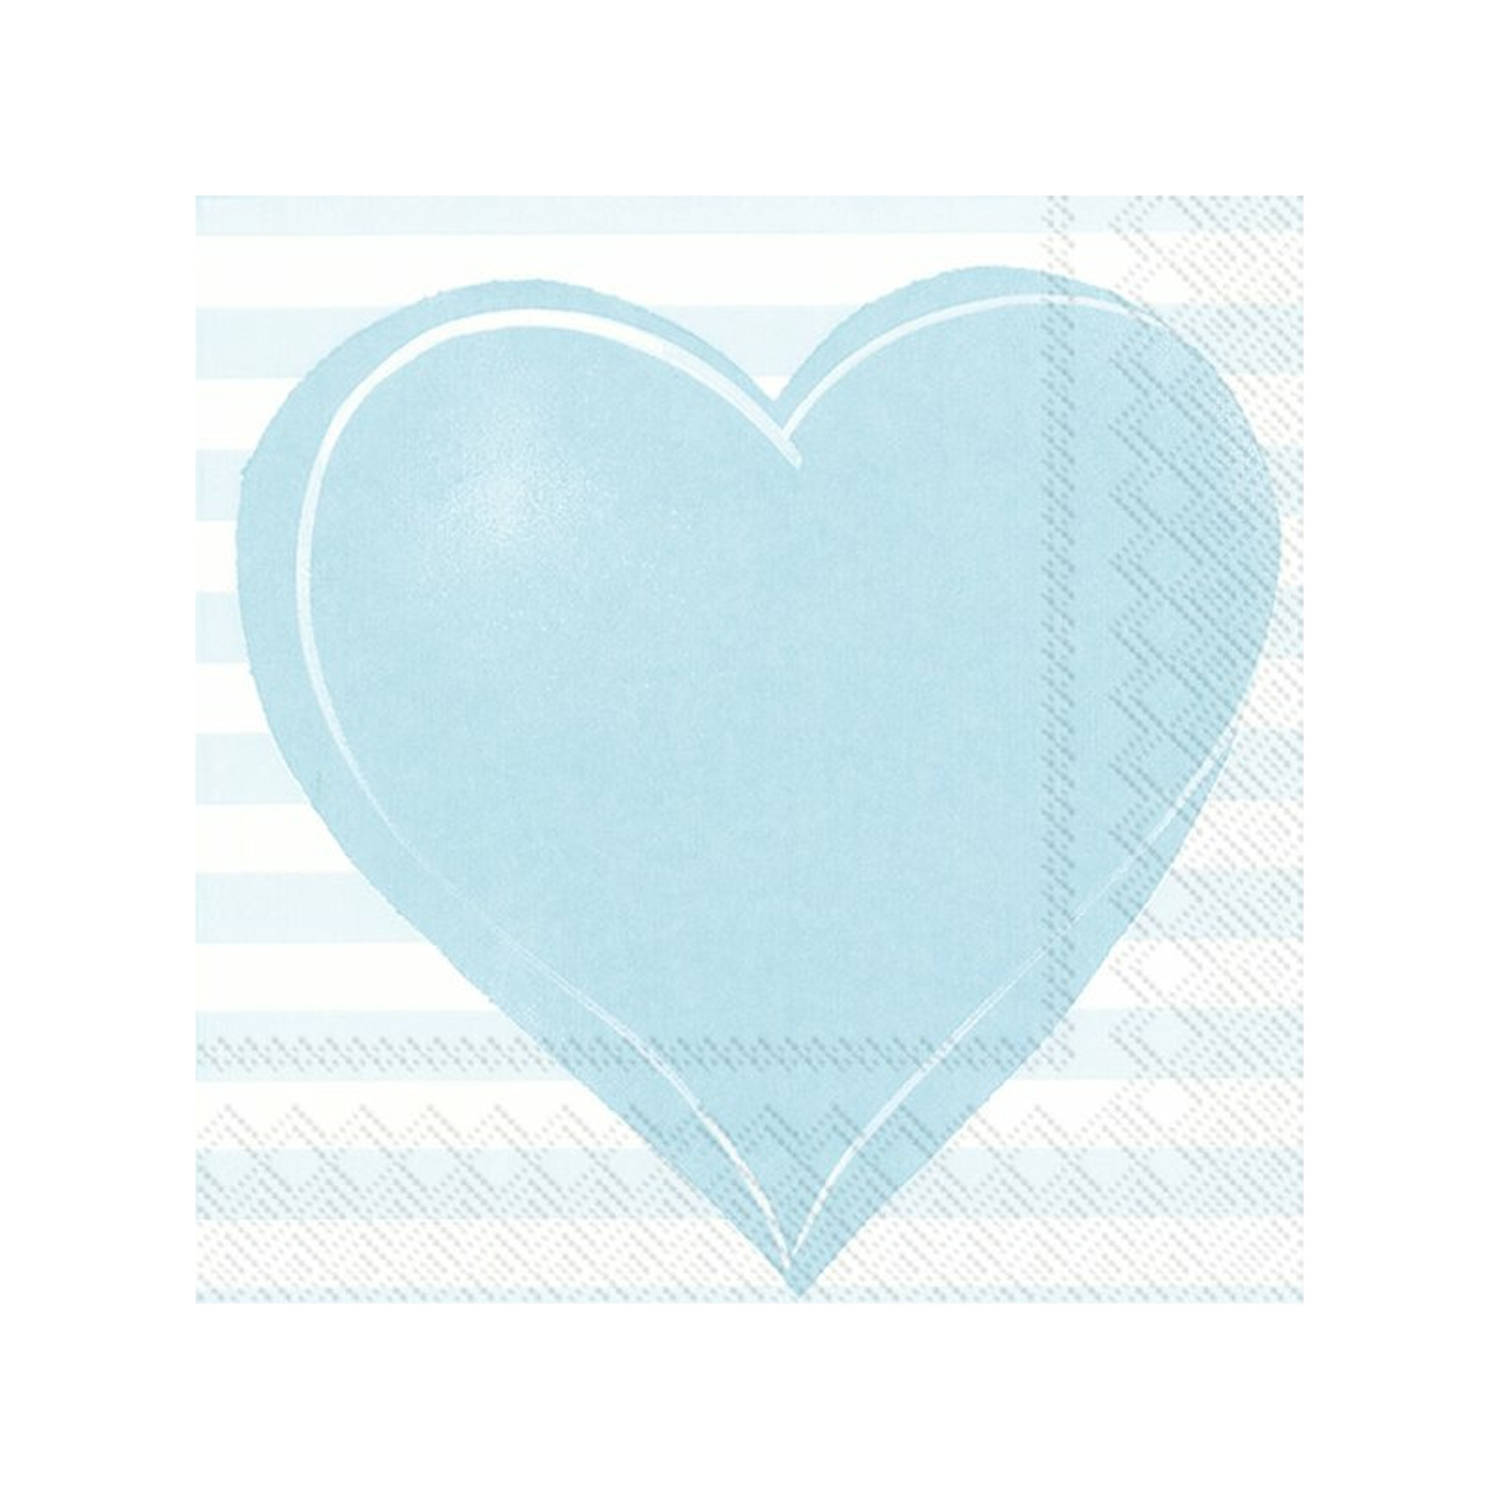 20x Blauwe 3-laags servetten hartje 33 x 33 cm - Baby/jongen thema